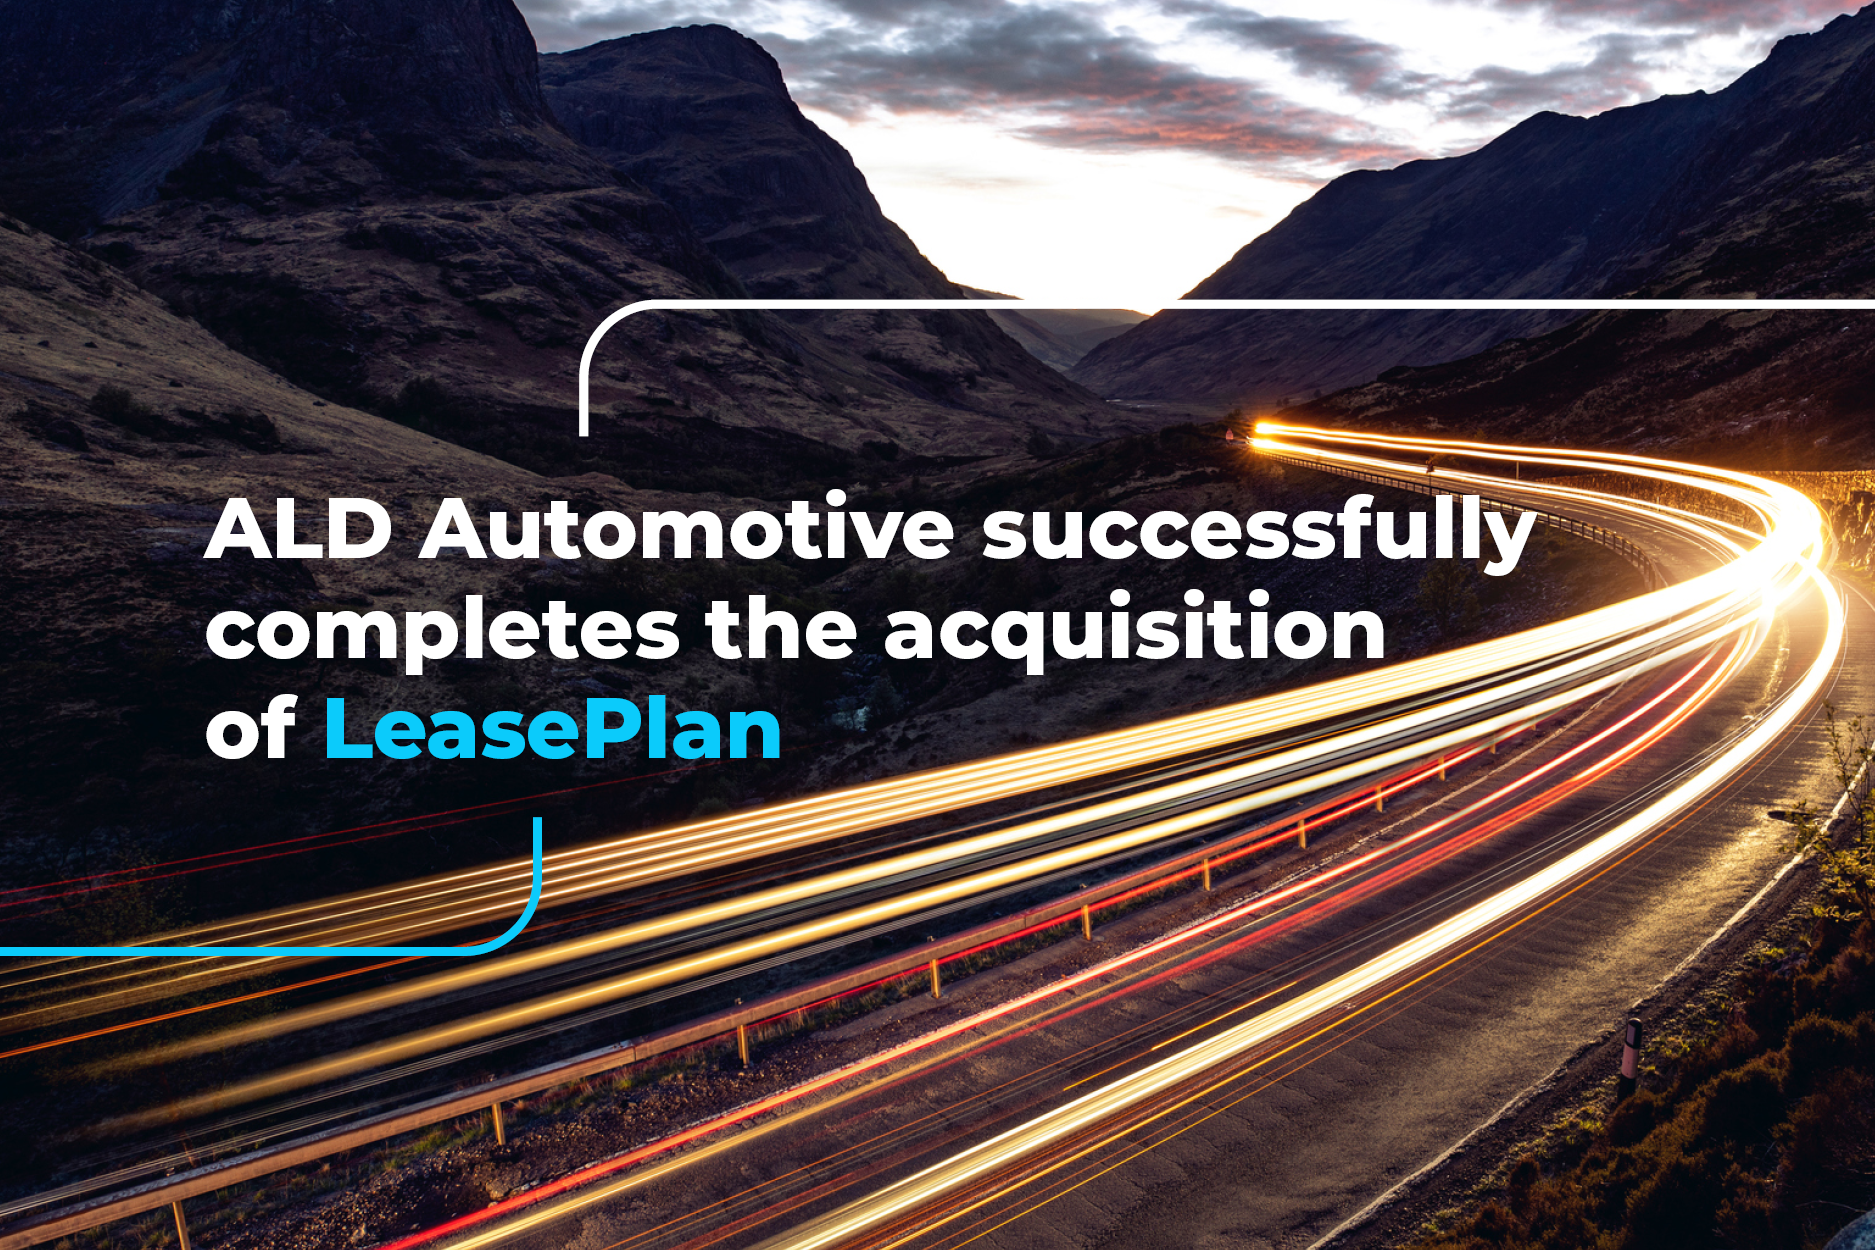 Η ALD Automotive ολοκληρώνει με επιτυχία την εξαγορά της LeasePlan και ανακοινώνει διοικητικές αλλαγές στην Ελλάδα